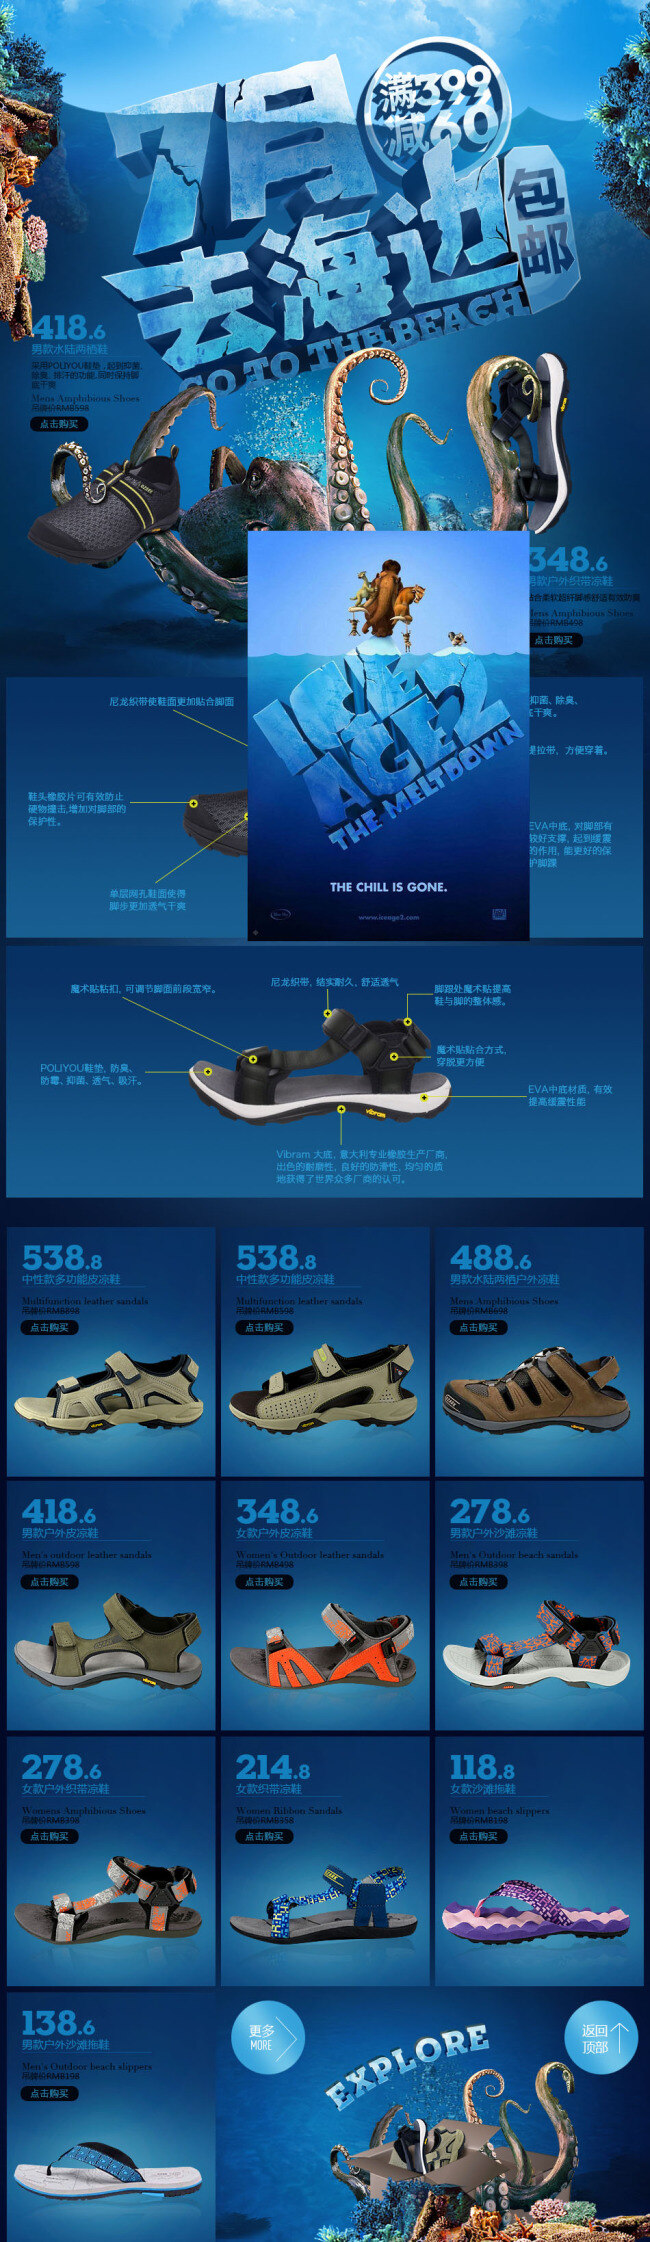 淘宝 夏季 沙滩鞋 活动 海报 淘宝海报 首页海报 促销海报 蓝色